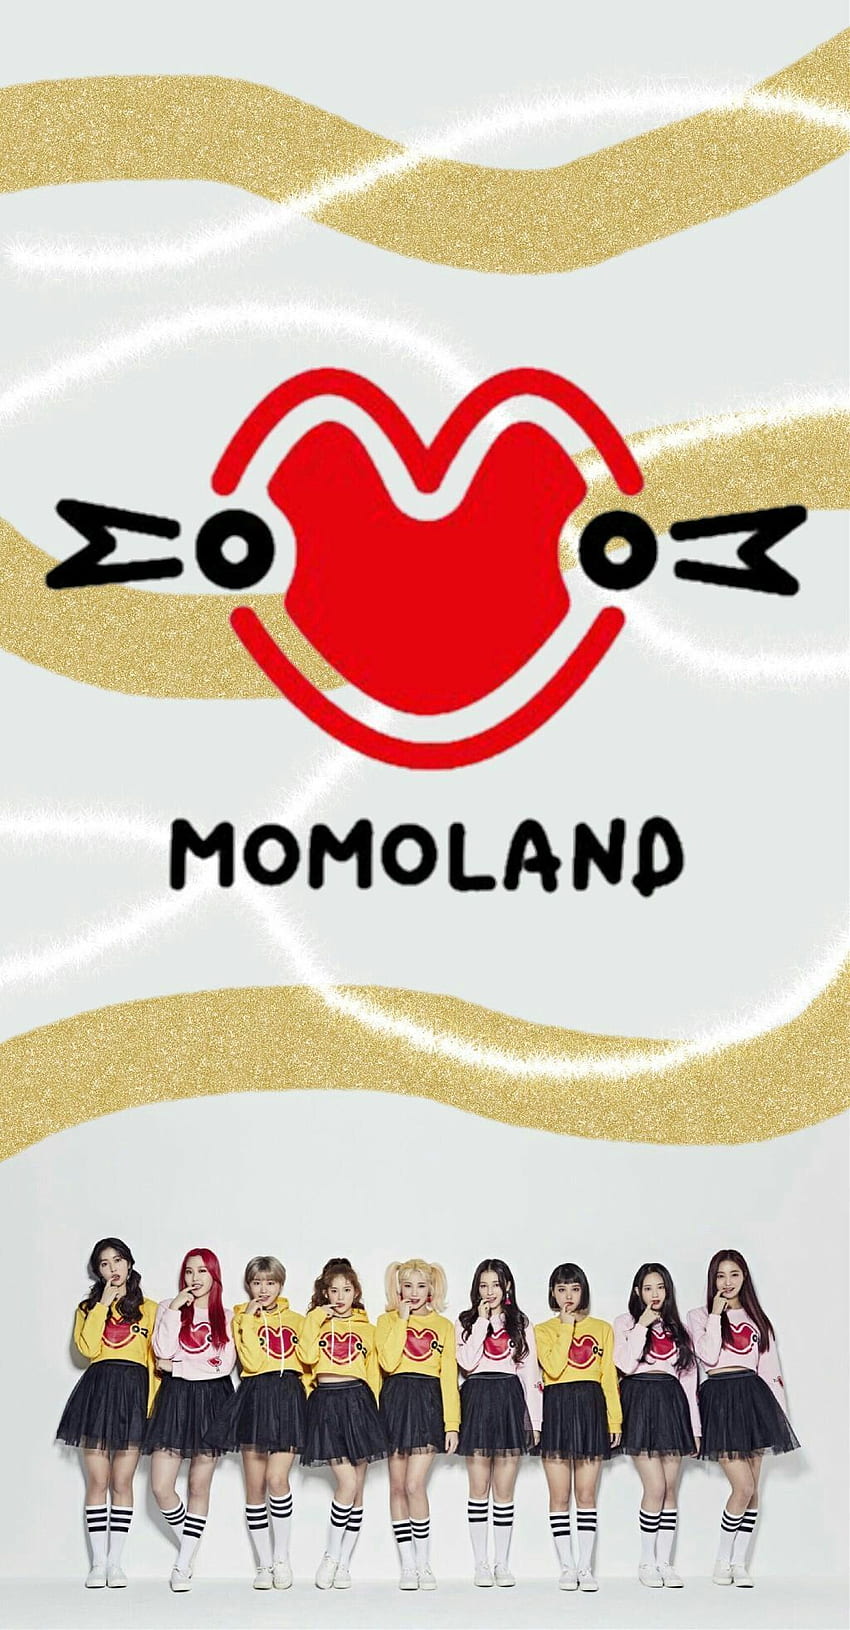 Art momoland ideas. kpop girls, velvet , red valvet, Momoland Logo HD phone wallpaper